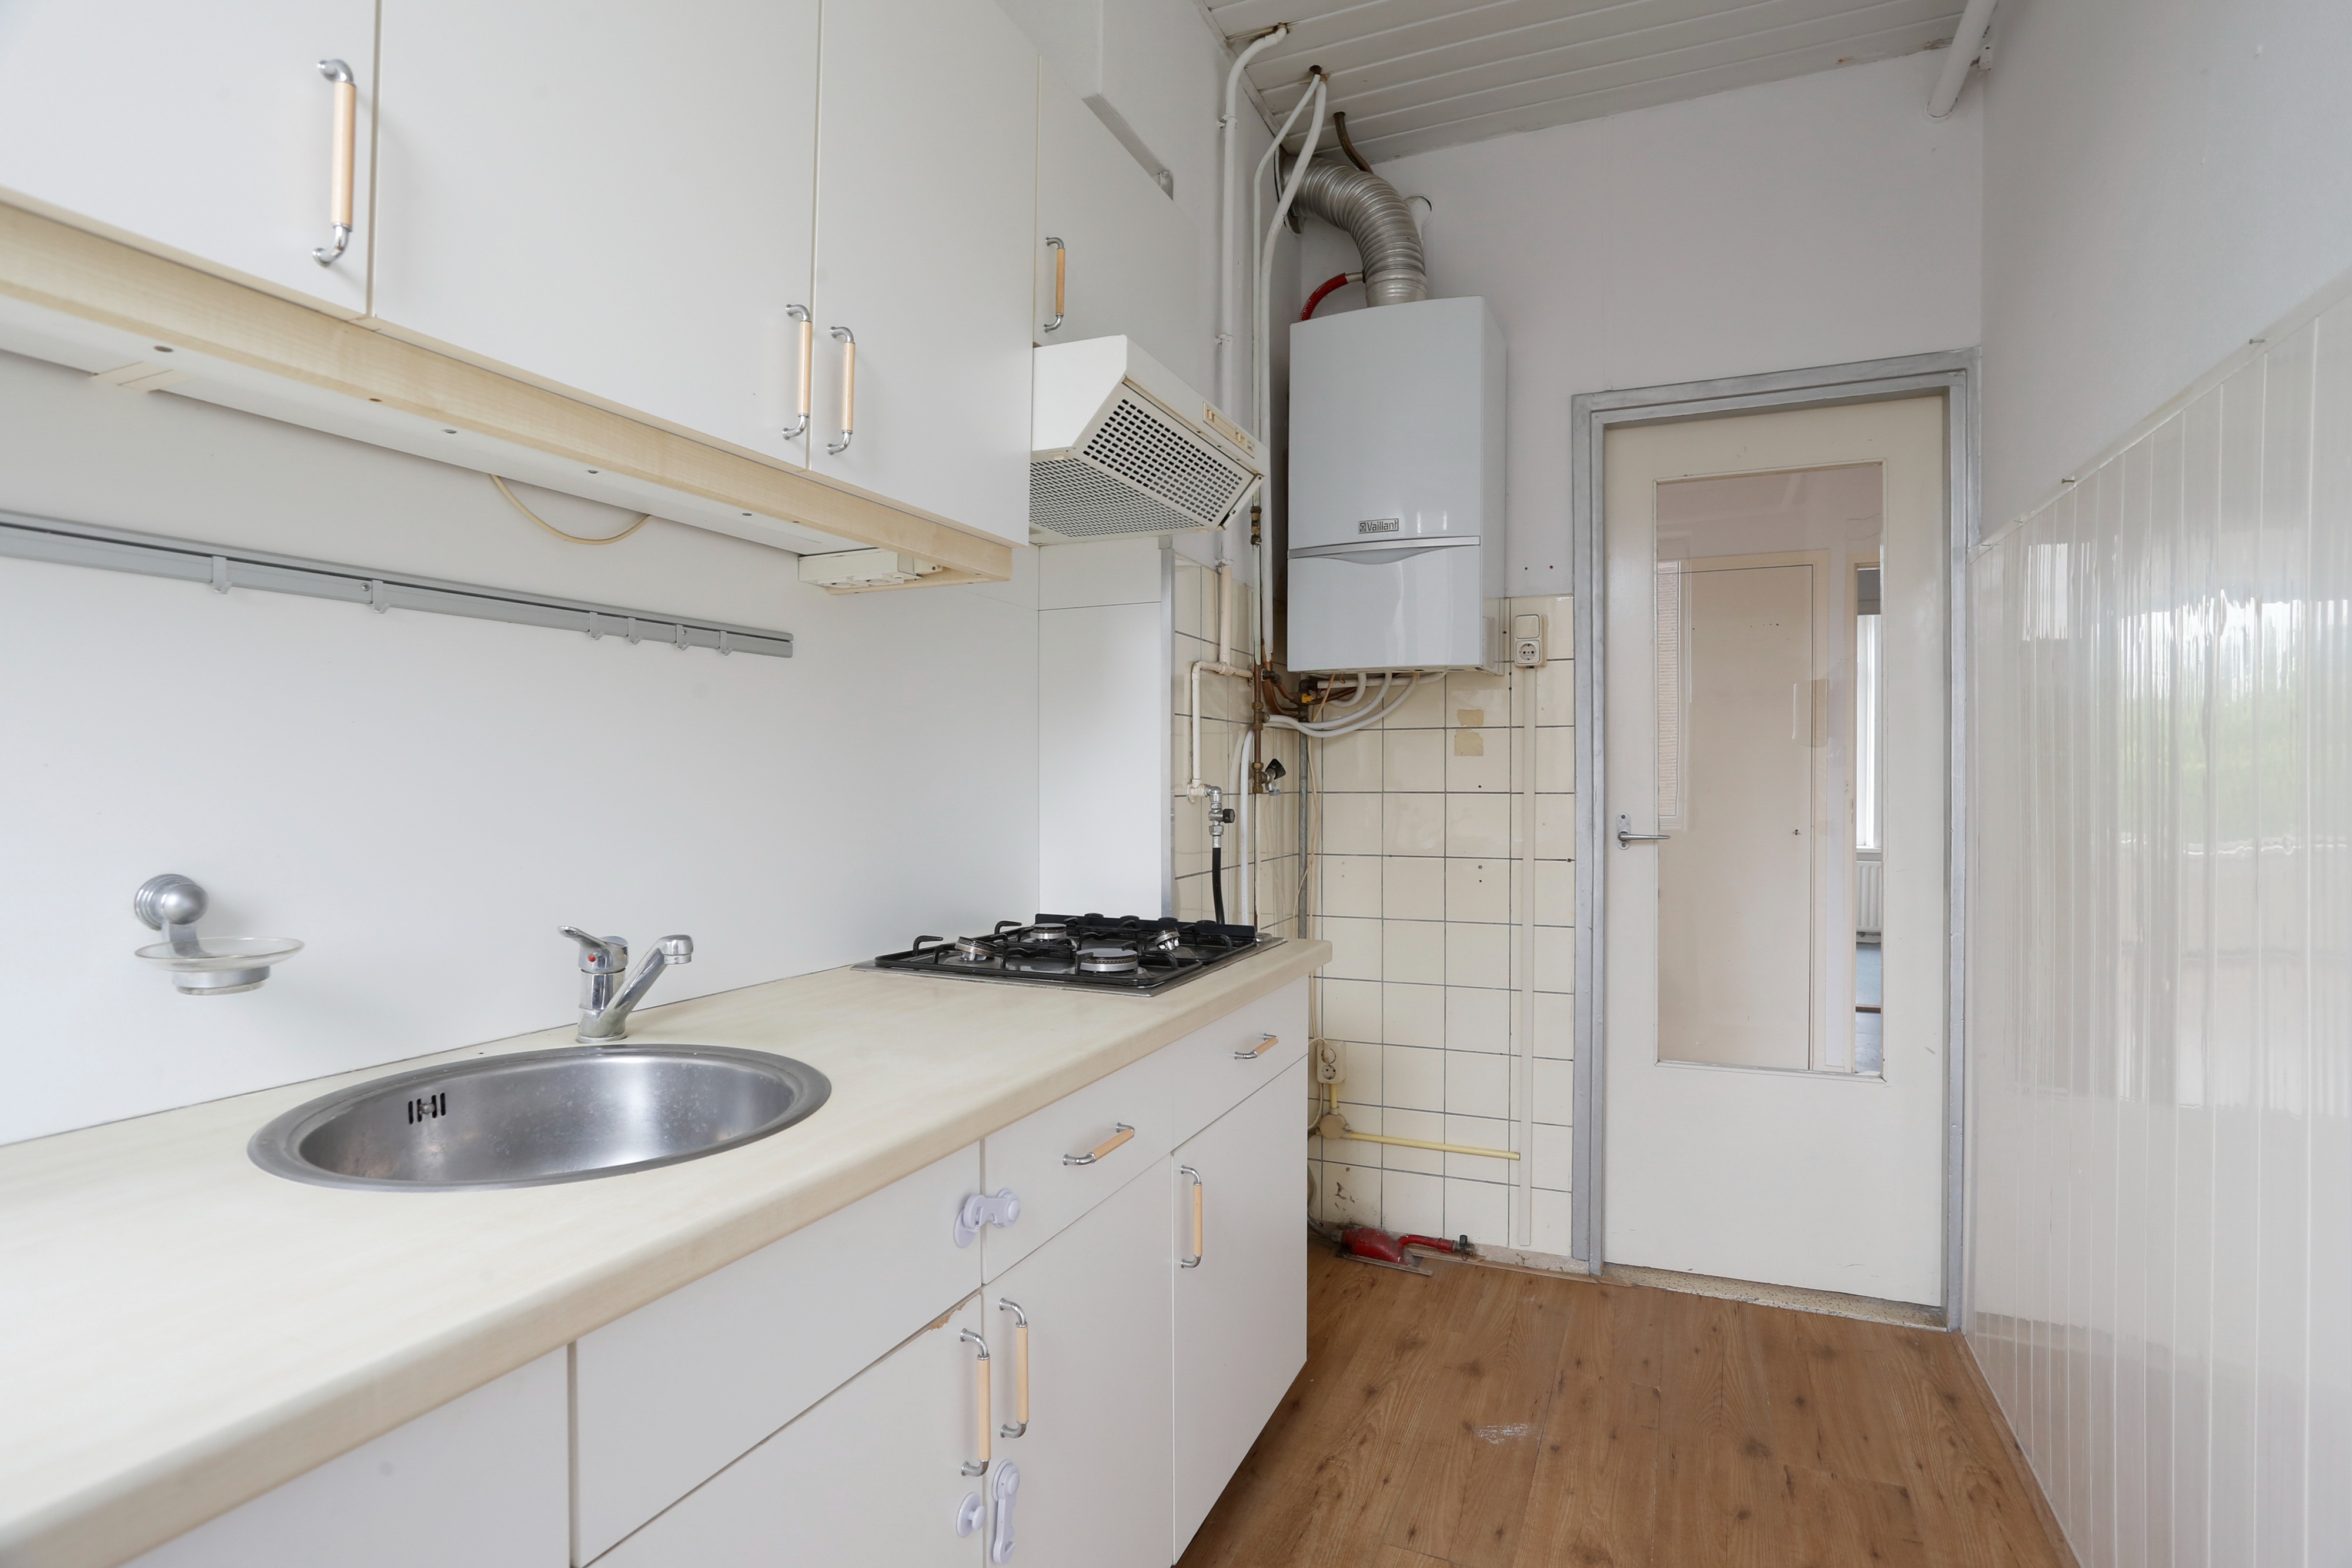 Woning / appartement - Rijswijk - Generaal Spoorlaan 169